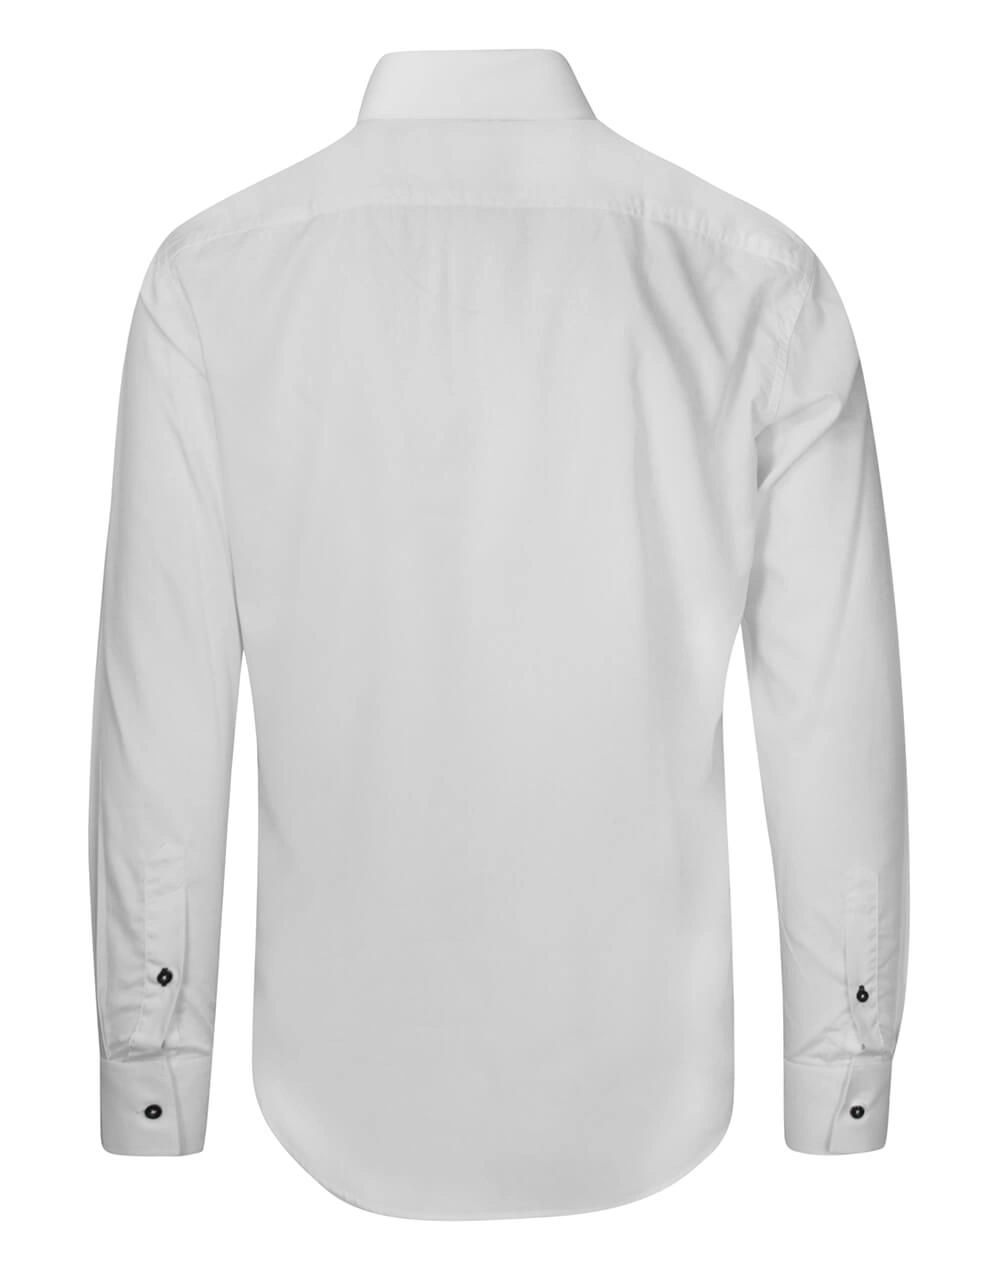 Koszula Biała Wizytowa Męska, Ciemne Guziki, z Długim Rękawem, Taliowana, 100% Bawełna -RANIR